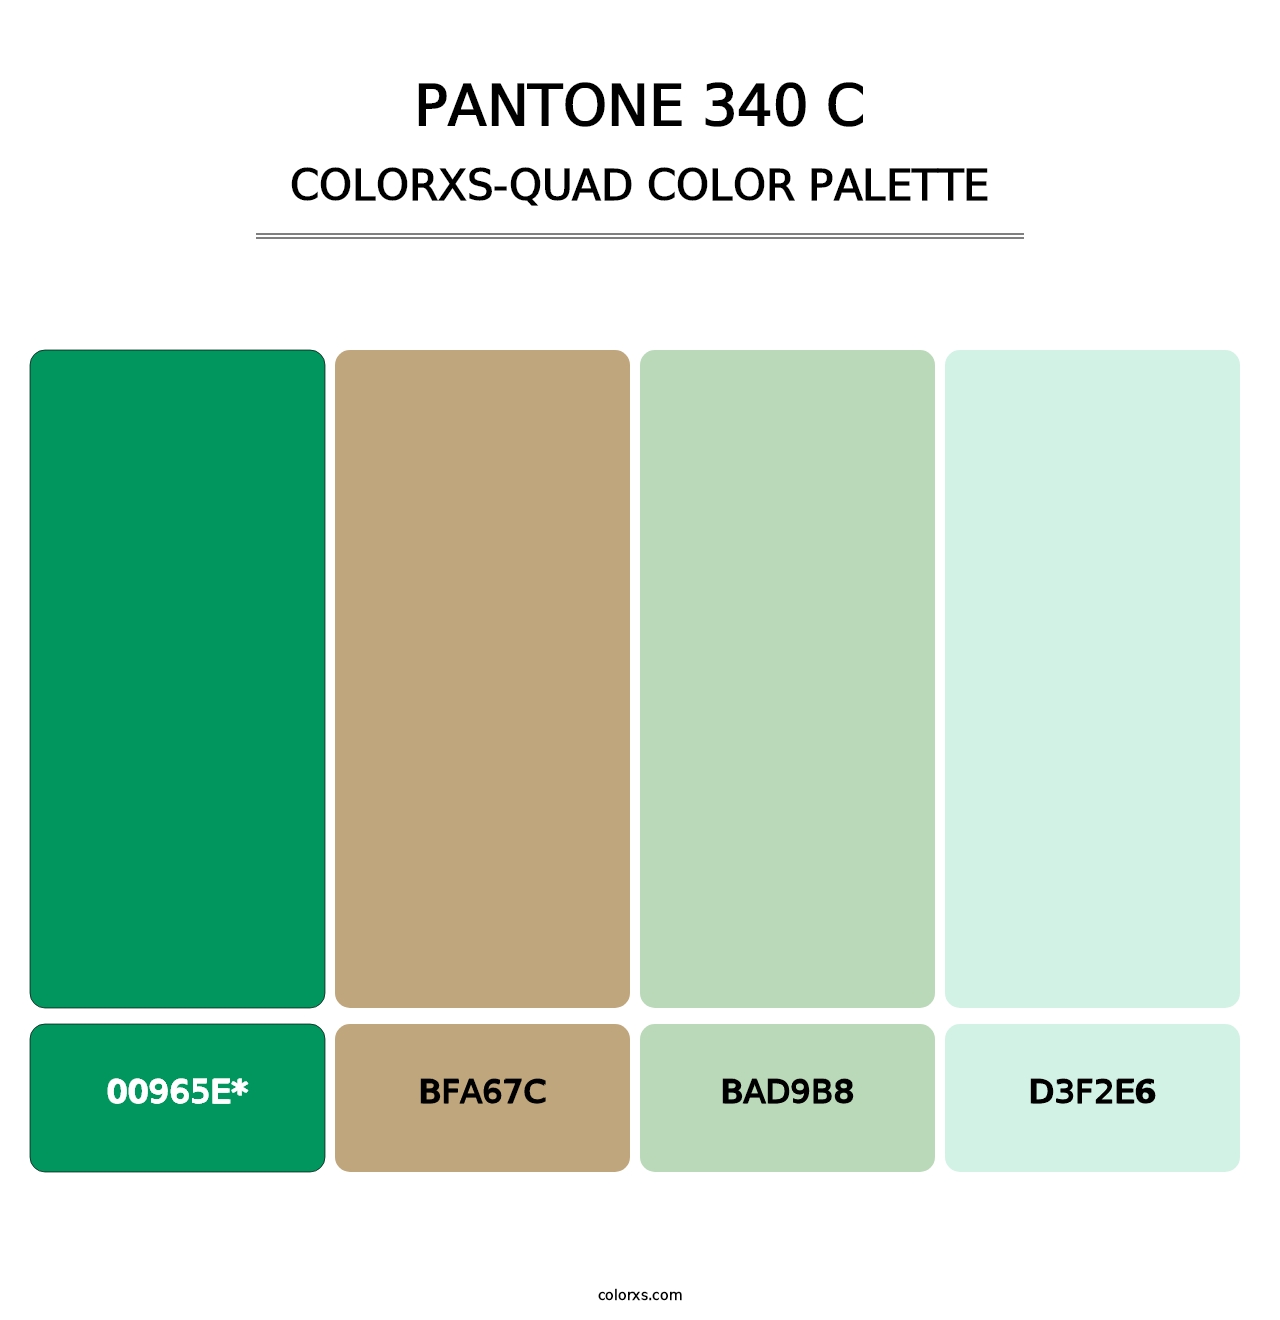 PANTONE 340 C - Colorxs Quad Palette